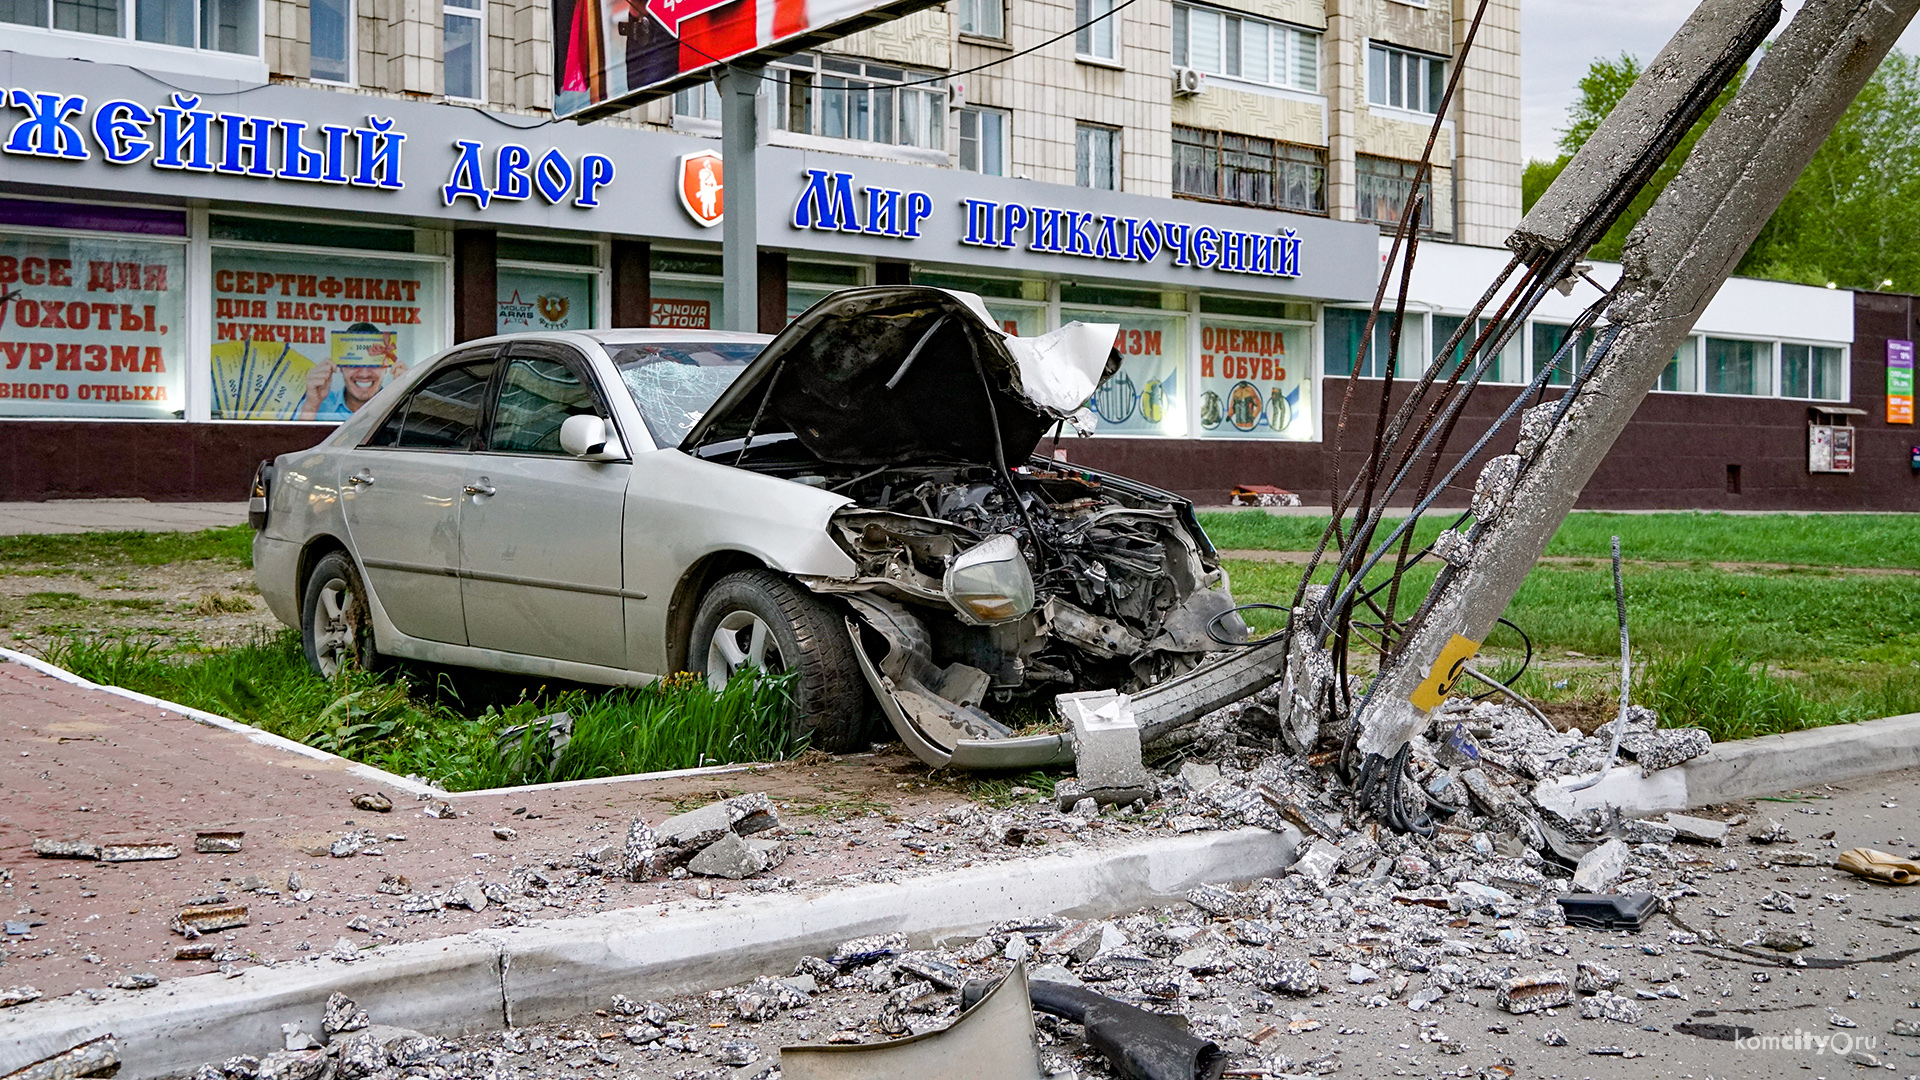 Водитель «Марка», уничтожившего столб в центре Комсомольска-на-Амуре, отказался пройти тест на алкоголь, а ранее был лишён прав за «пьянку» 